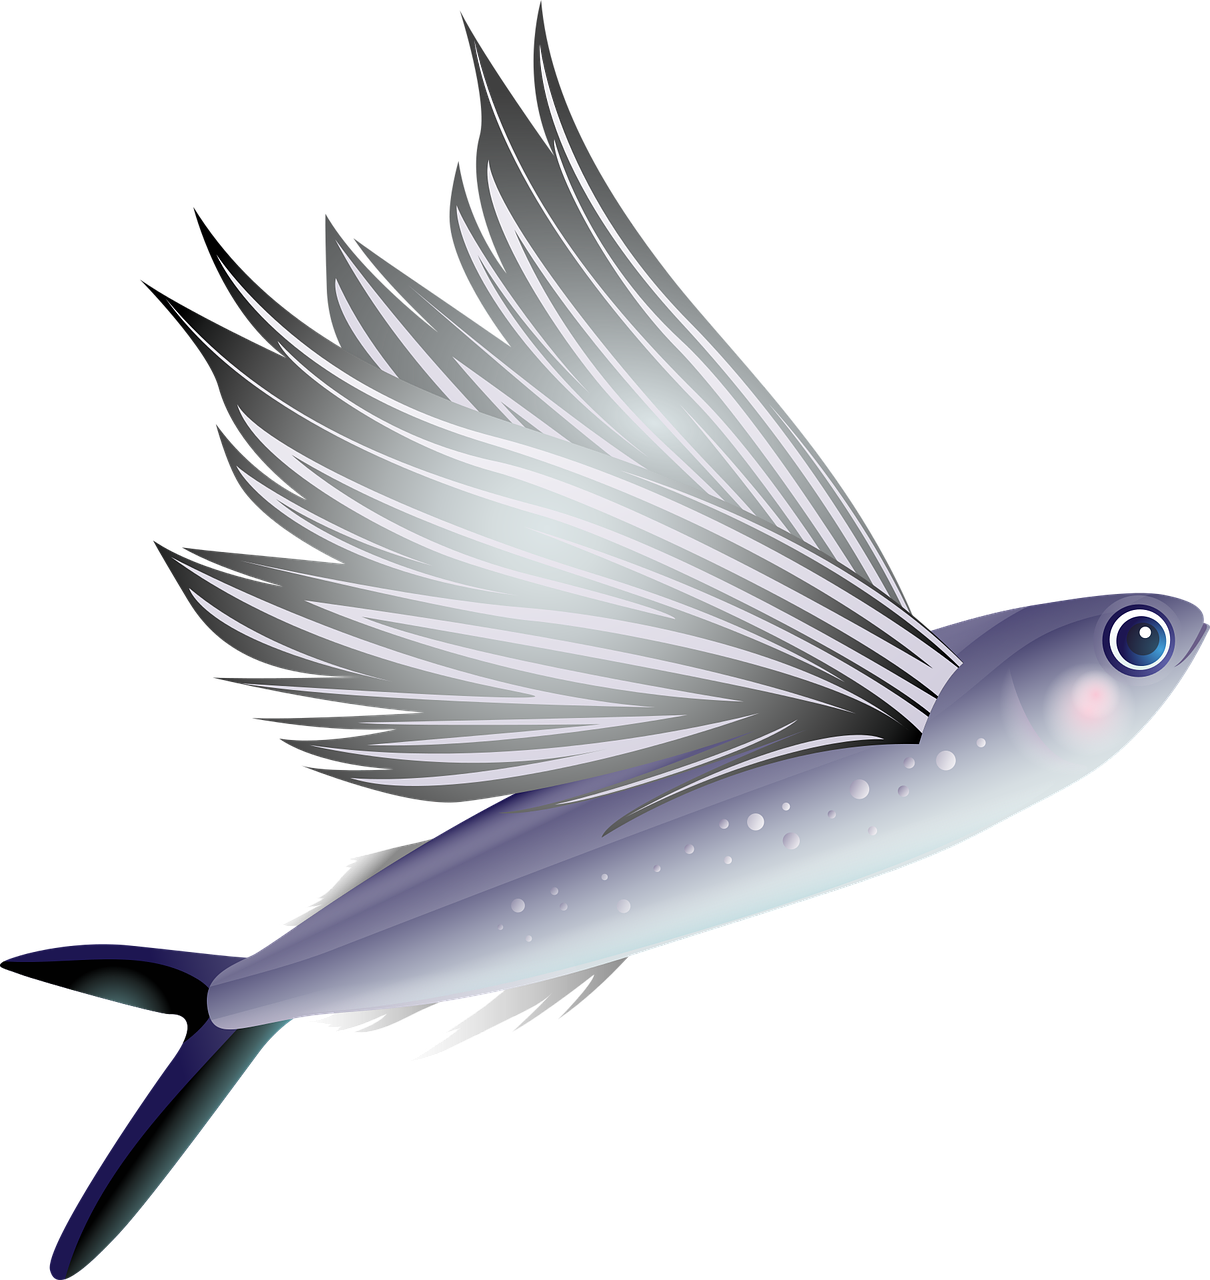 Ikan terbang dalam cerita rakyat dan mitologi